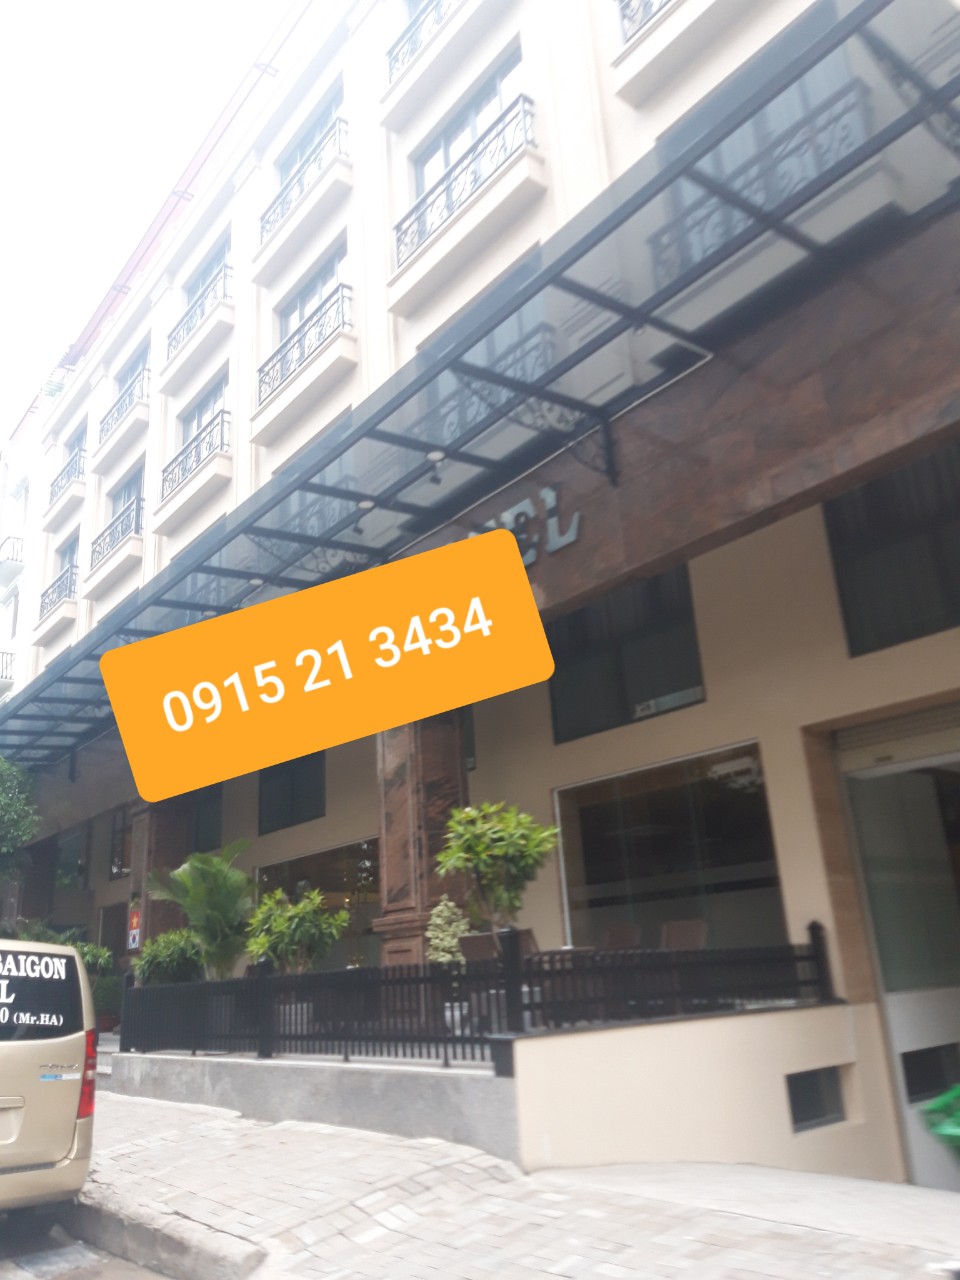 Cho thuê khách sạn Phú Mỹ Hưng đạt chuẩn 2 sao nội thất cao cấp LH: 0915 21 3434 PHONG.